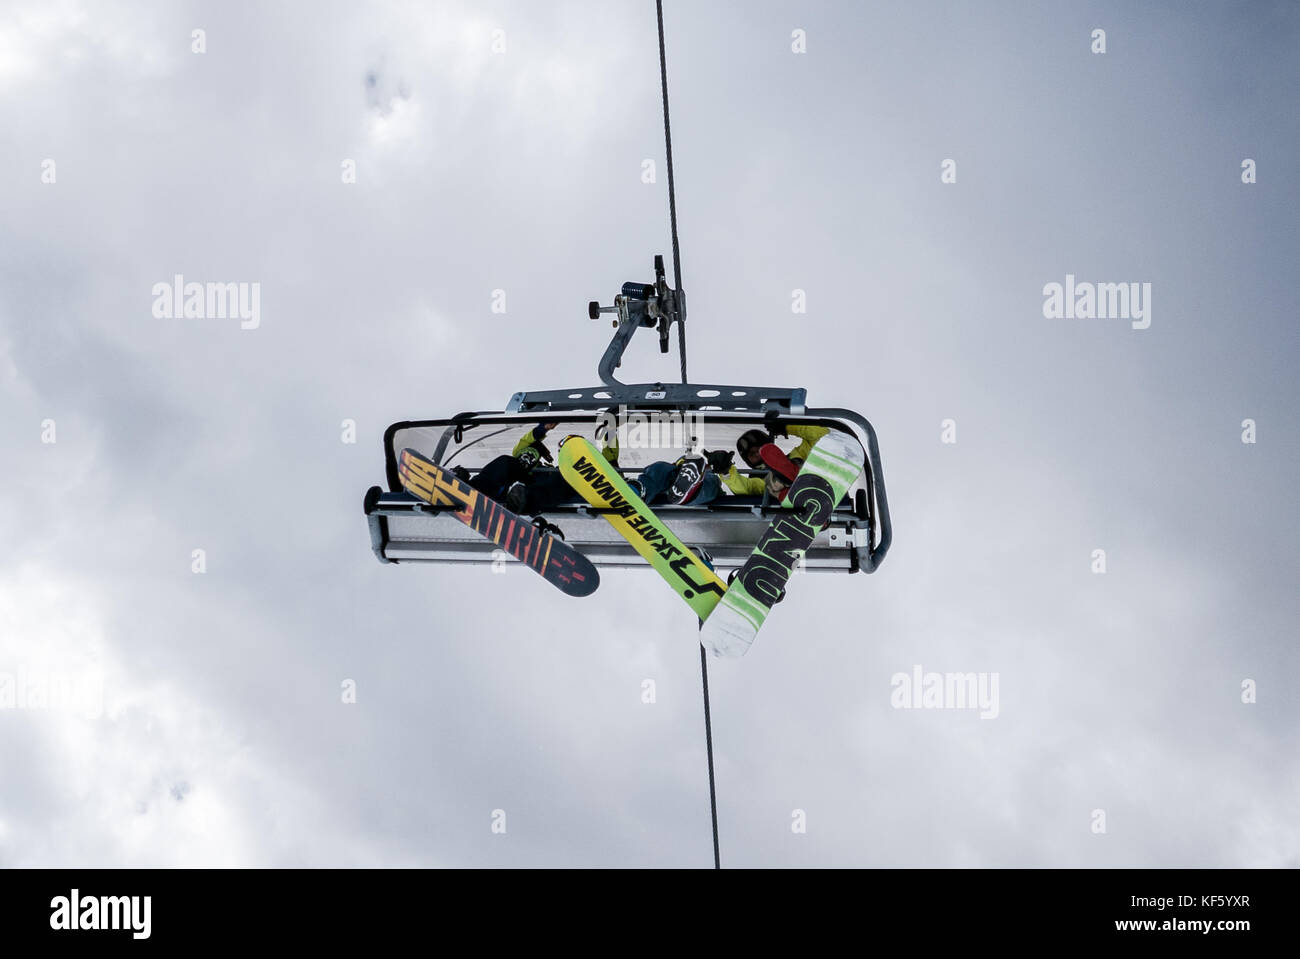 Madonna di campliglio, italie - apirl 8 snowboarders : à l'aide de remontées mécaniques en station de ski populaire Banque D'Images